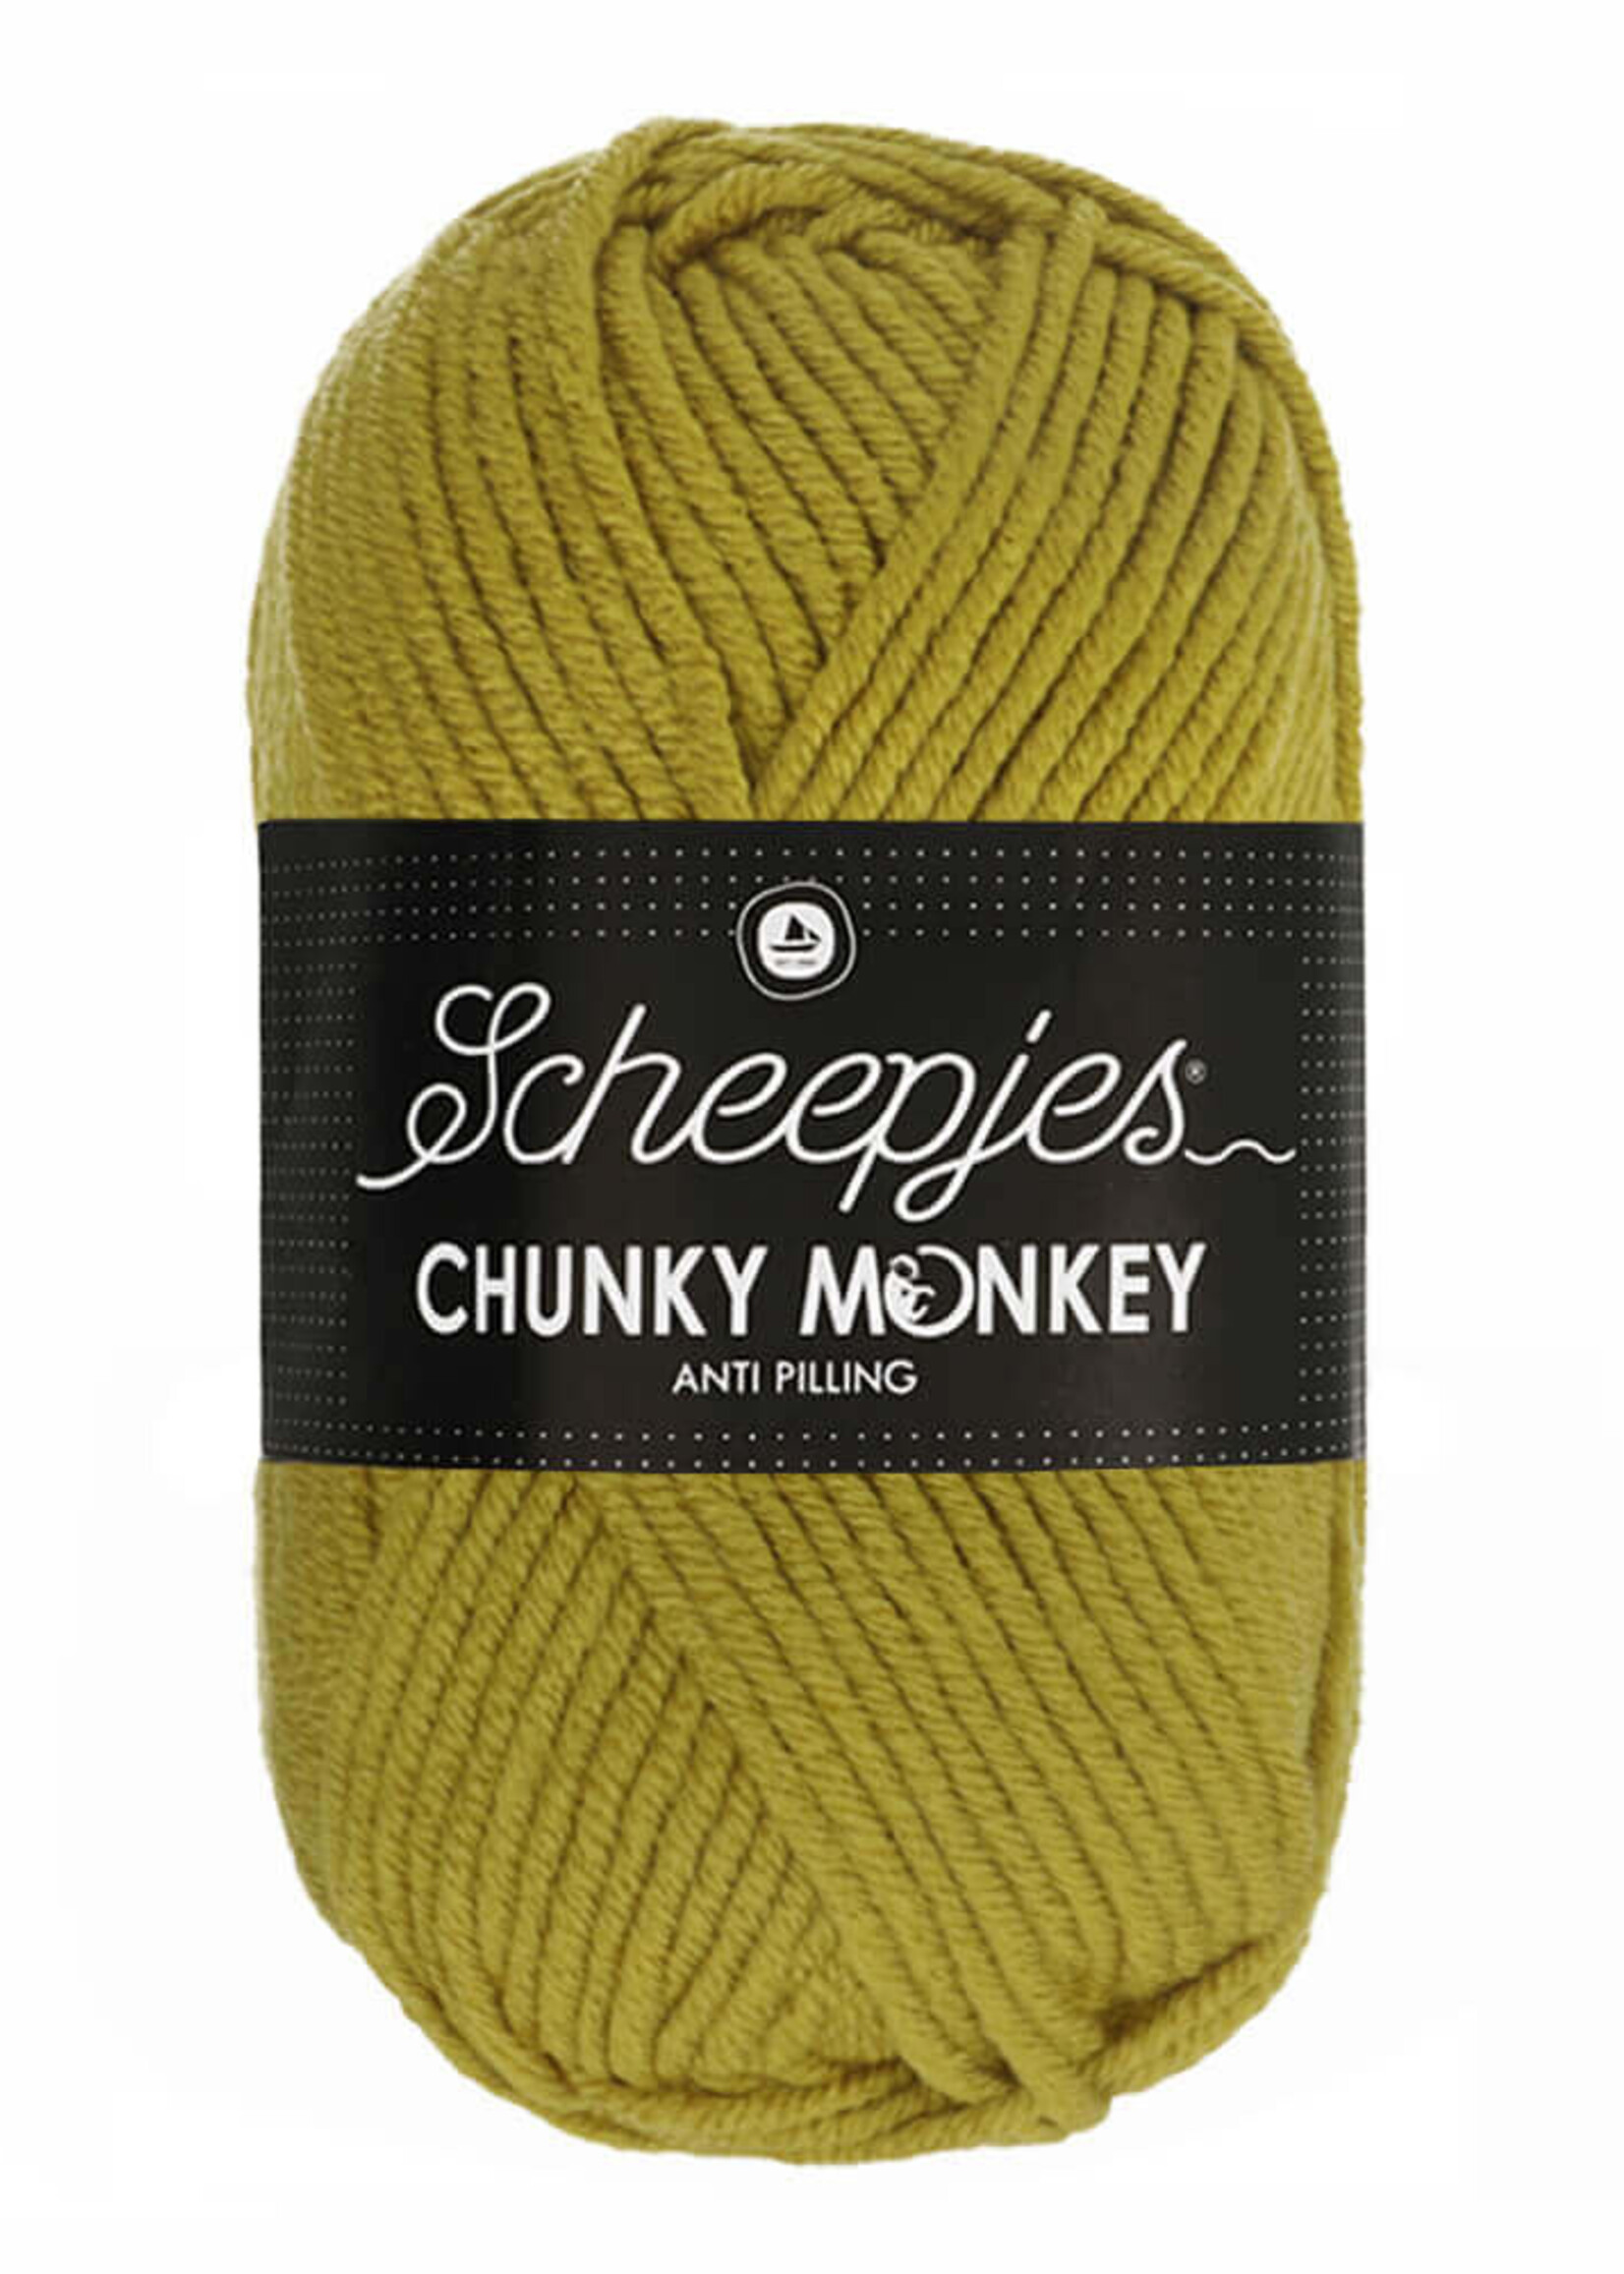 Scheepjes Chunky Monkey - Scheepjes -1712 Bumblebee